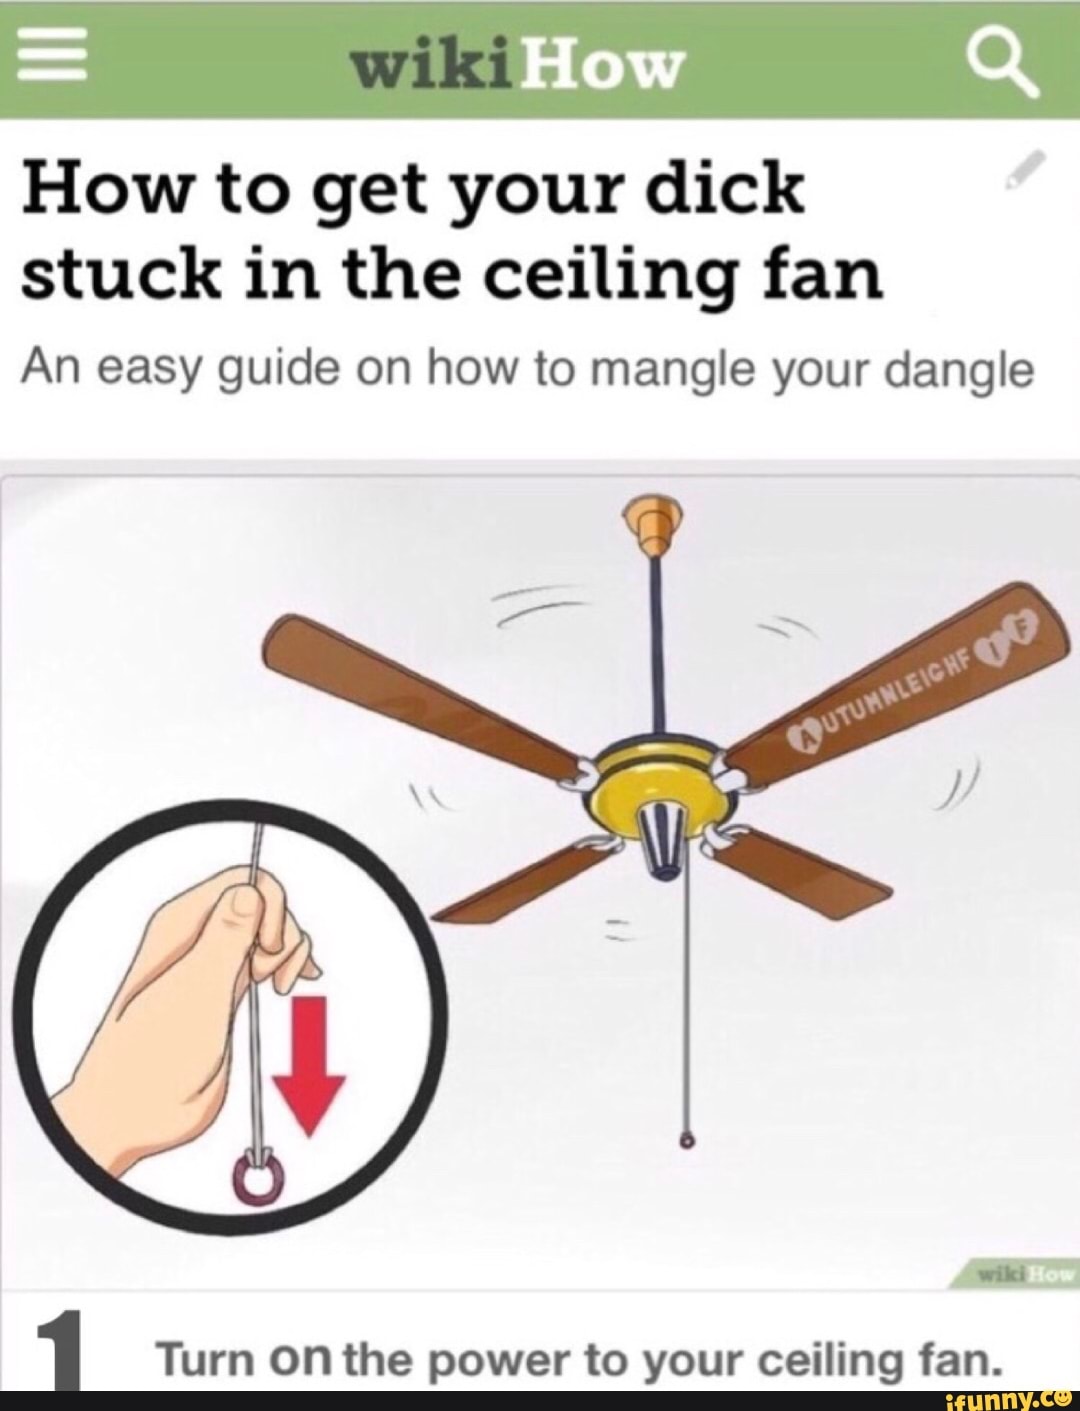 Dick caught in ceiling fan meme